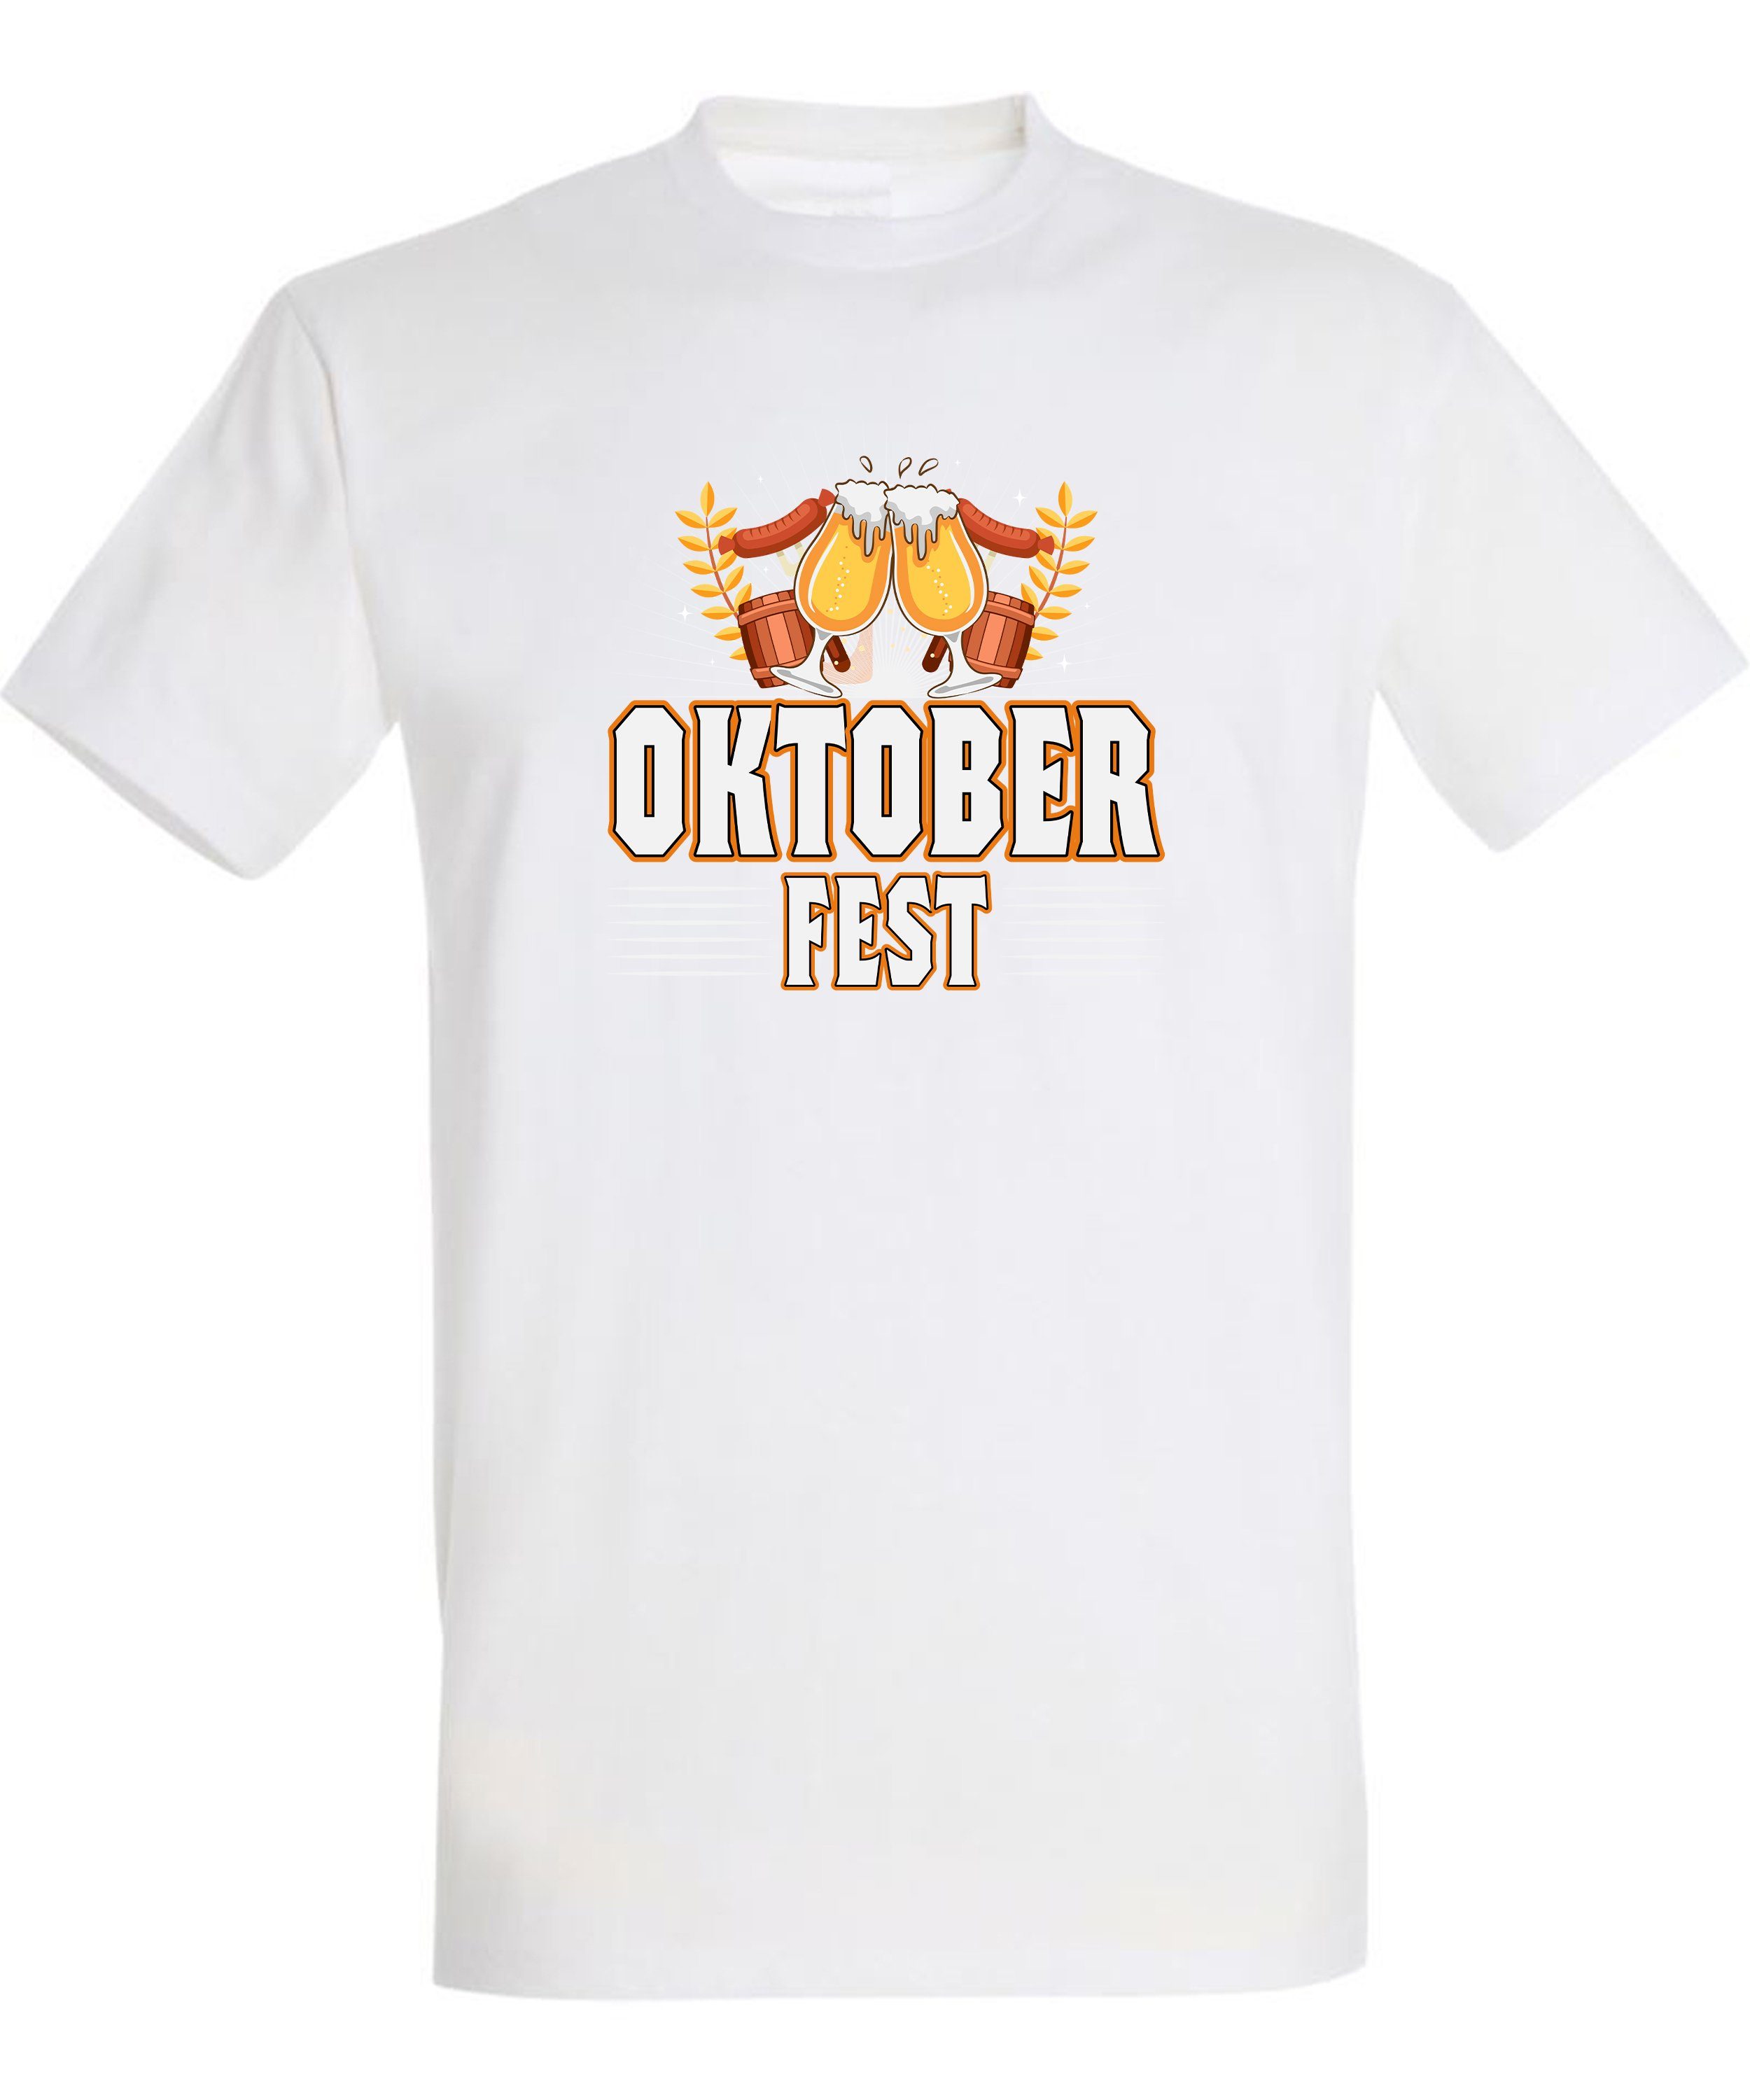 T-Shirt Fit, Regular Shirt Herren Oktoberfest MyDesign24 i327 Baumwollshirt - Aufdruck T-Shirt Party mit weiss